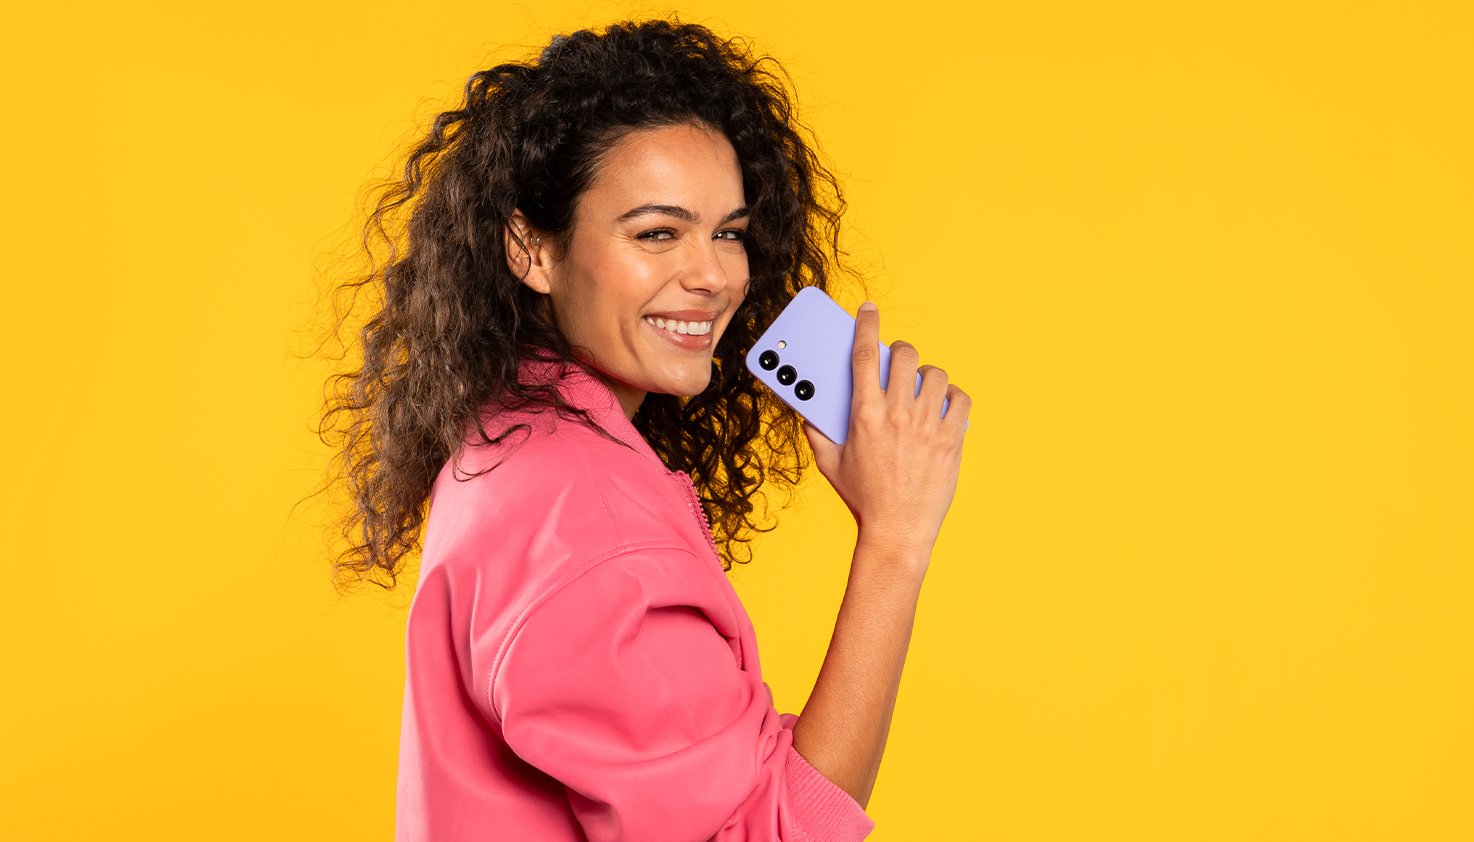 Vrouw houdt lachend paars telefoonhoesje vast, de achtergrond is geel.